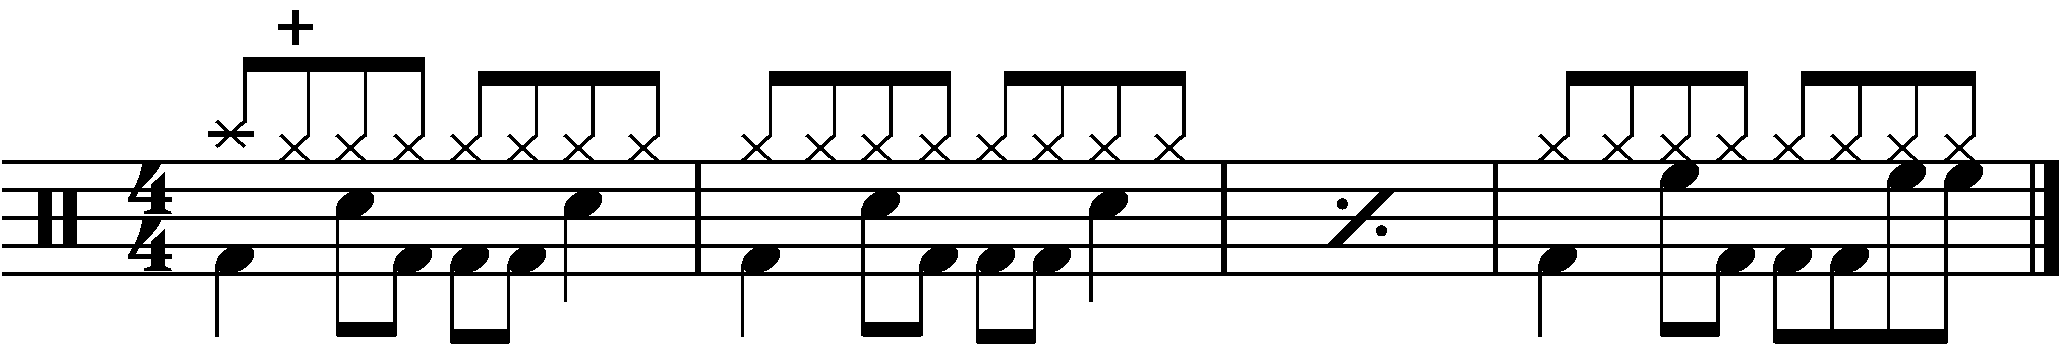 An four bar example